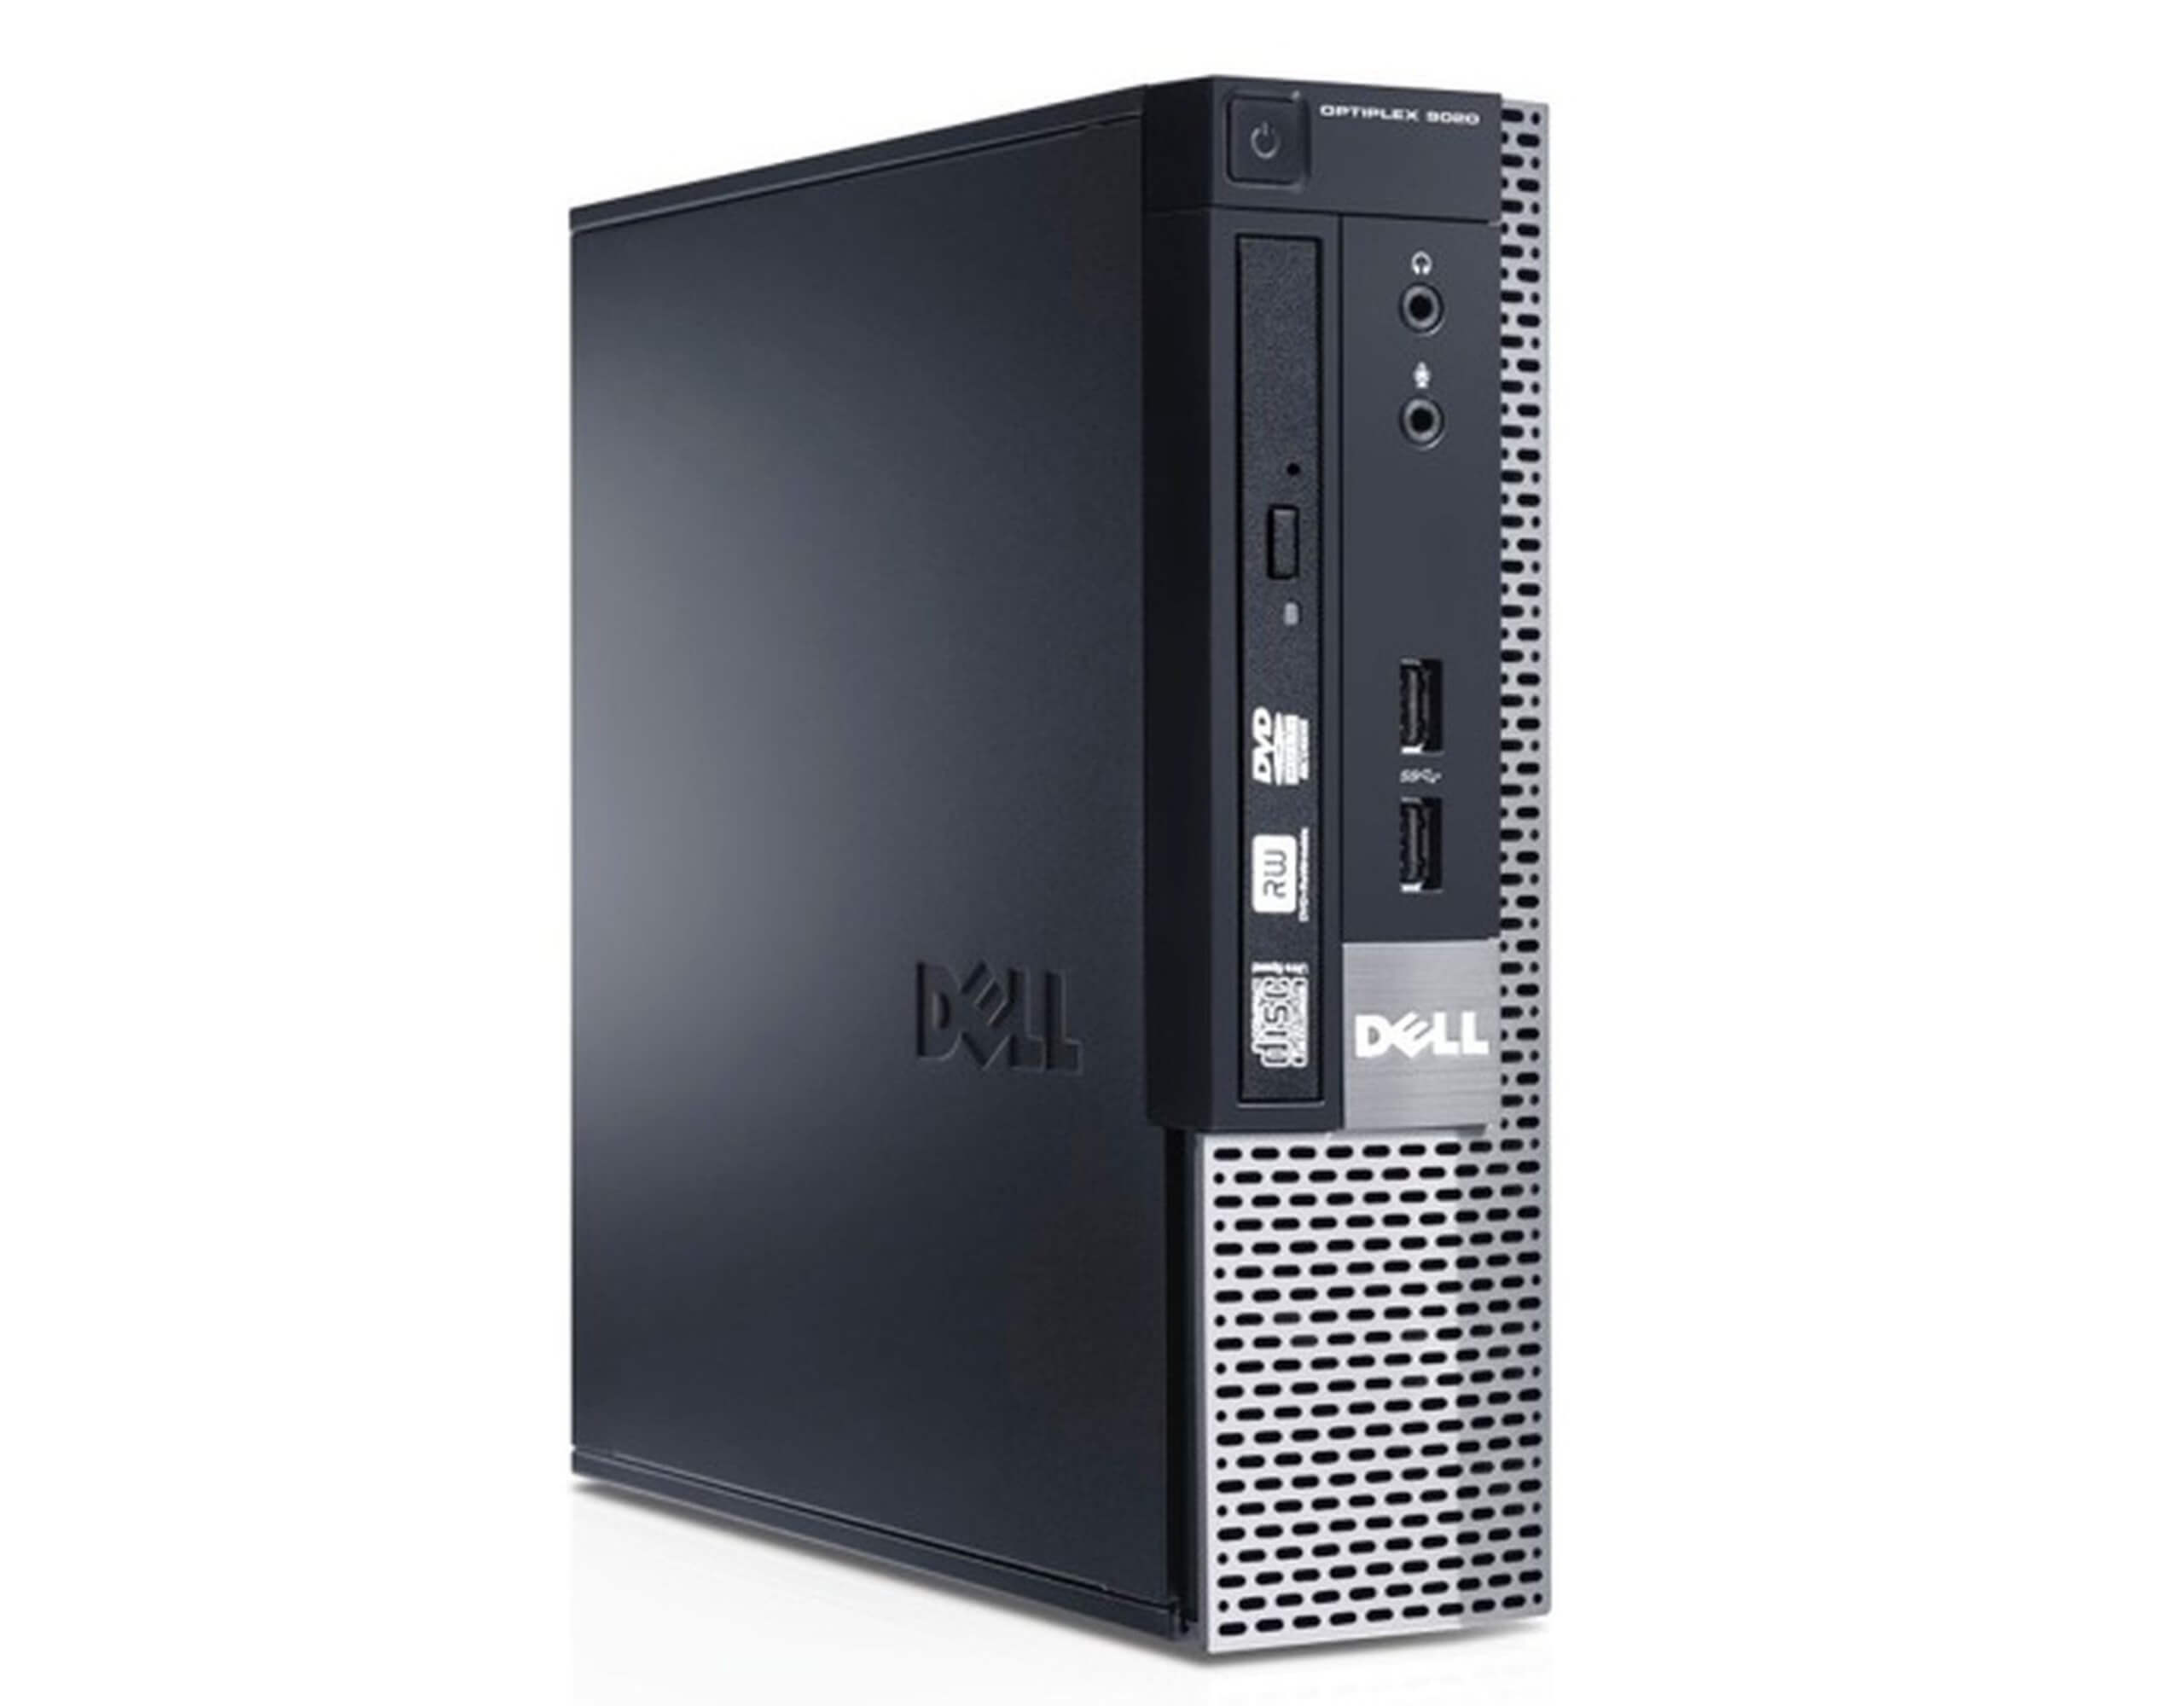 DELL 9020 USFF I5-4430S 2.7 / 8192 MB DDR3 / 500 GB / DVD-RW / WINDOWS 10 PRO